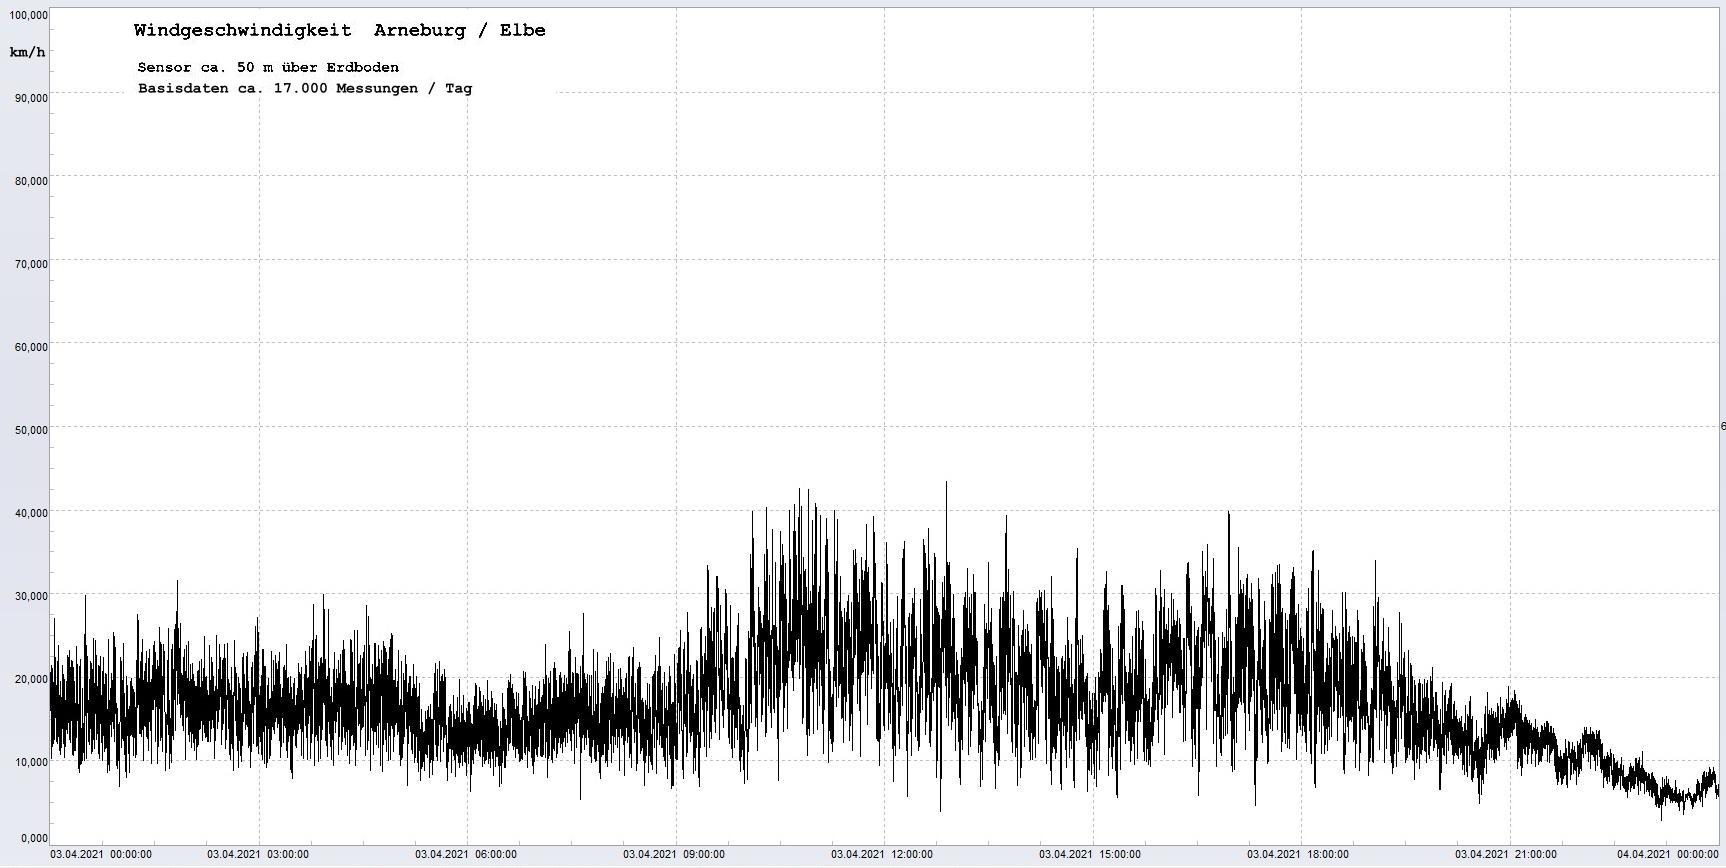 Arneburg Winddaten 03.04.2021, 
  Sensor auf Gebude, ca. 50 m ber Erdboden, 5s-Aufzeichnung